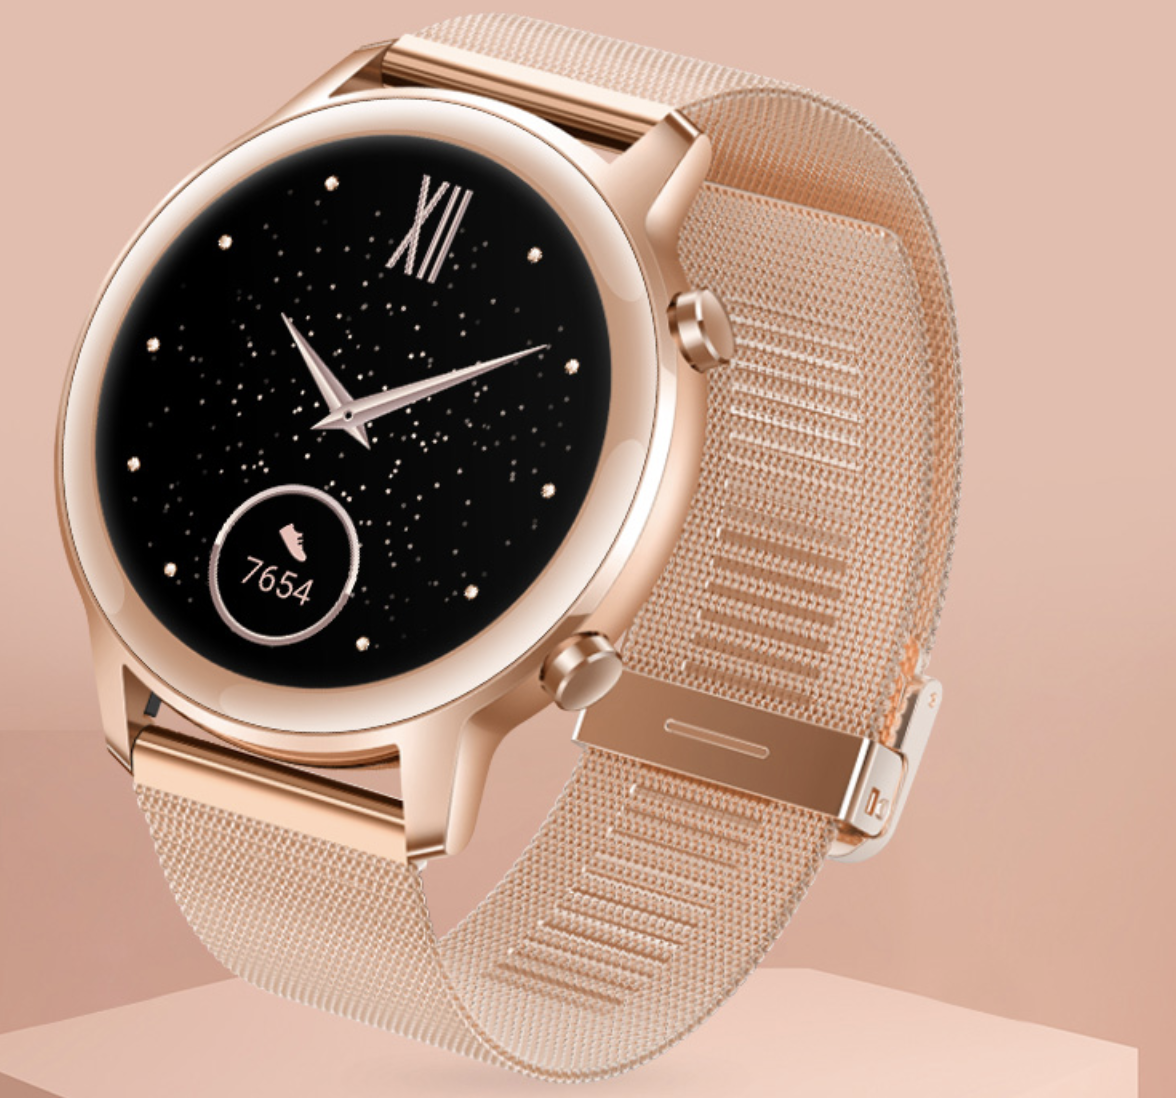 新款设计休闲时尚男士品牌手表 时尚电子显示多功能男士手表-阿里巴巴